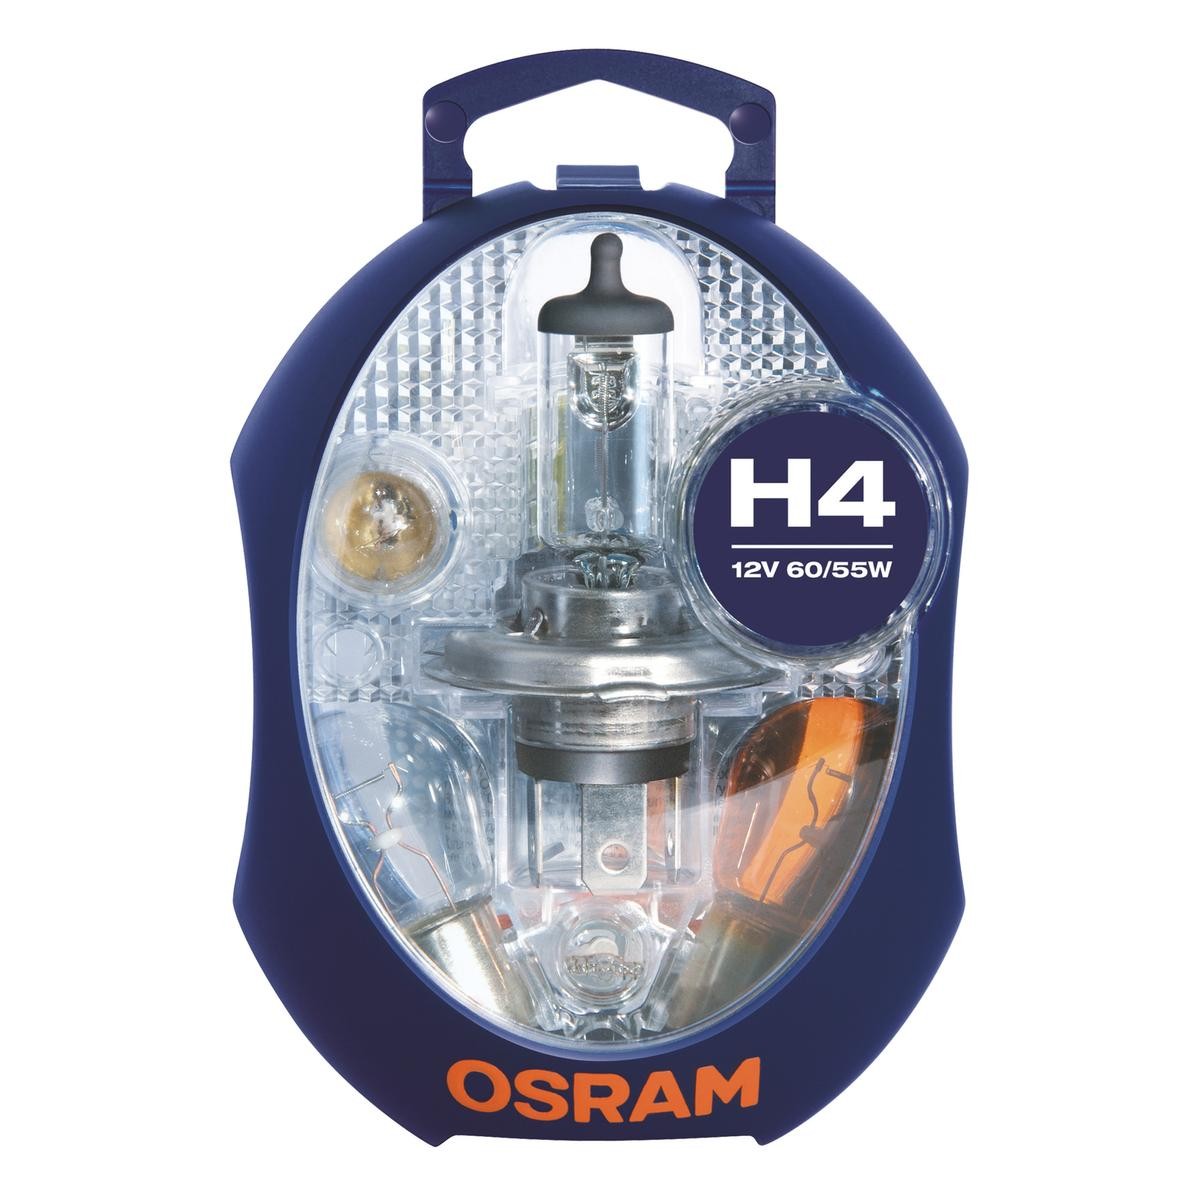 OSRAM Glühlampensortiment CLKM H4 von Osram